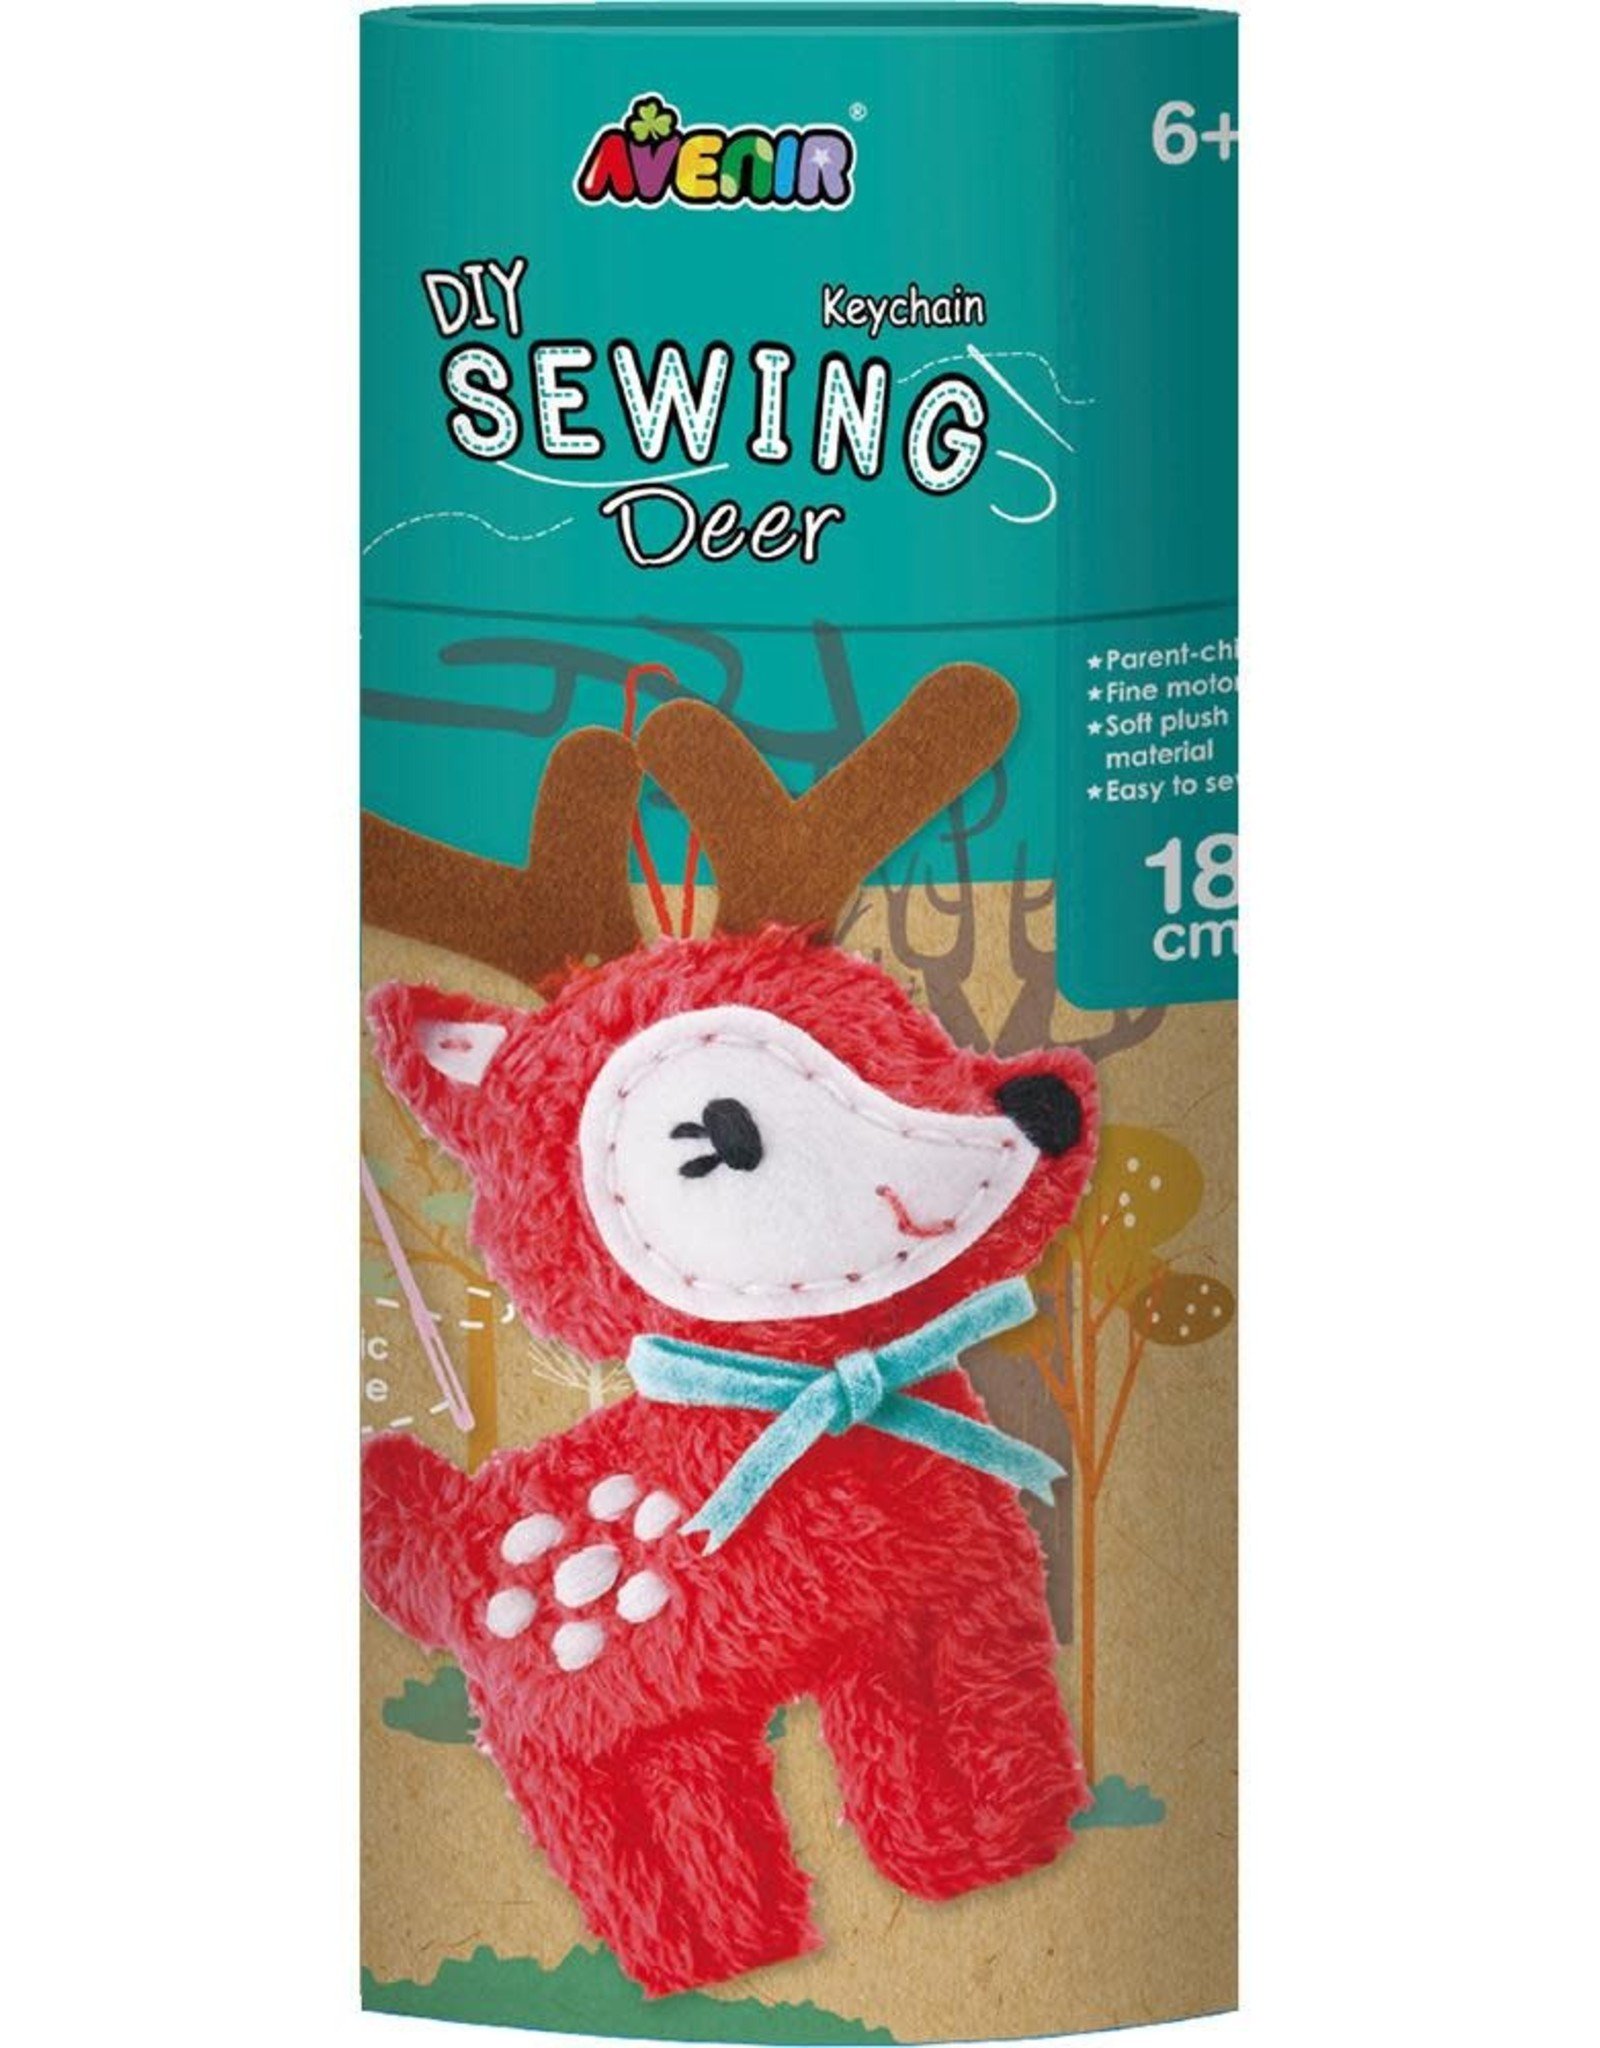 Dam Toys DIY Sewing Box / Deer